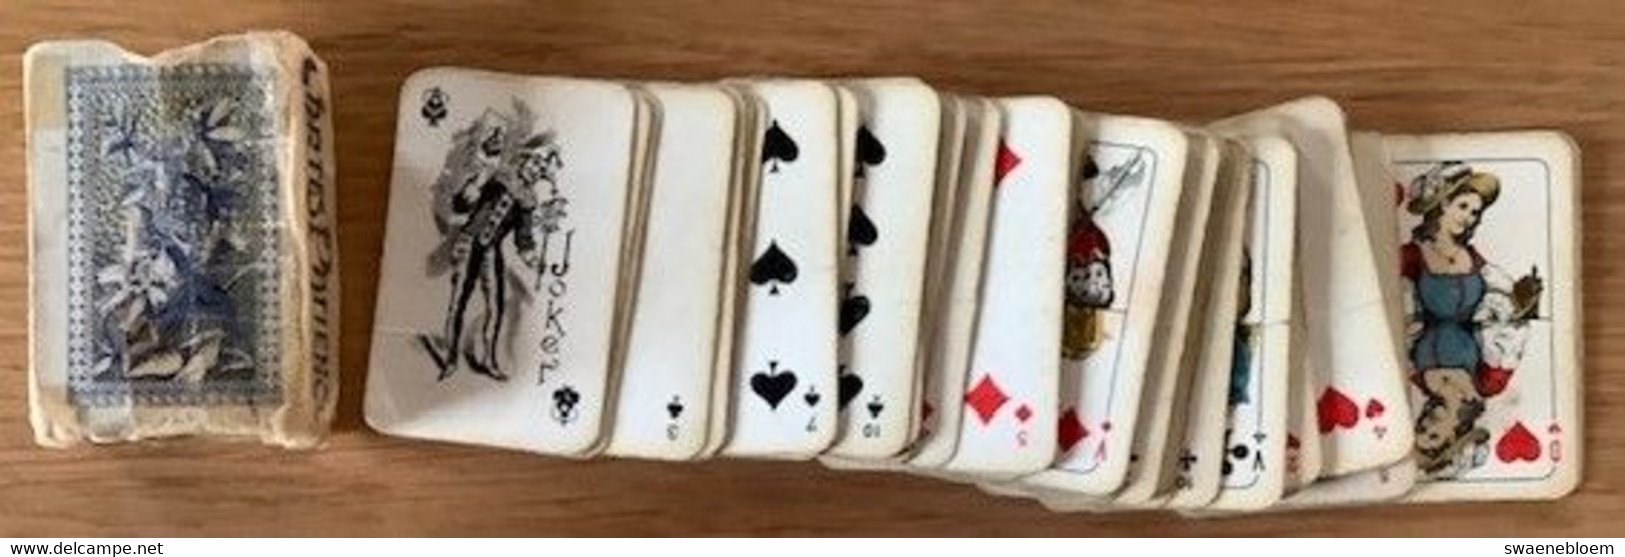 NL. 54 SPEELKAARTEN CARTES PATIENCE DE LUXE. No 37. Set Playing Cards. Spielkartenbsatz. Jeu De Cartes A Jouer. Gebruikt - 54 Cartes